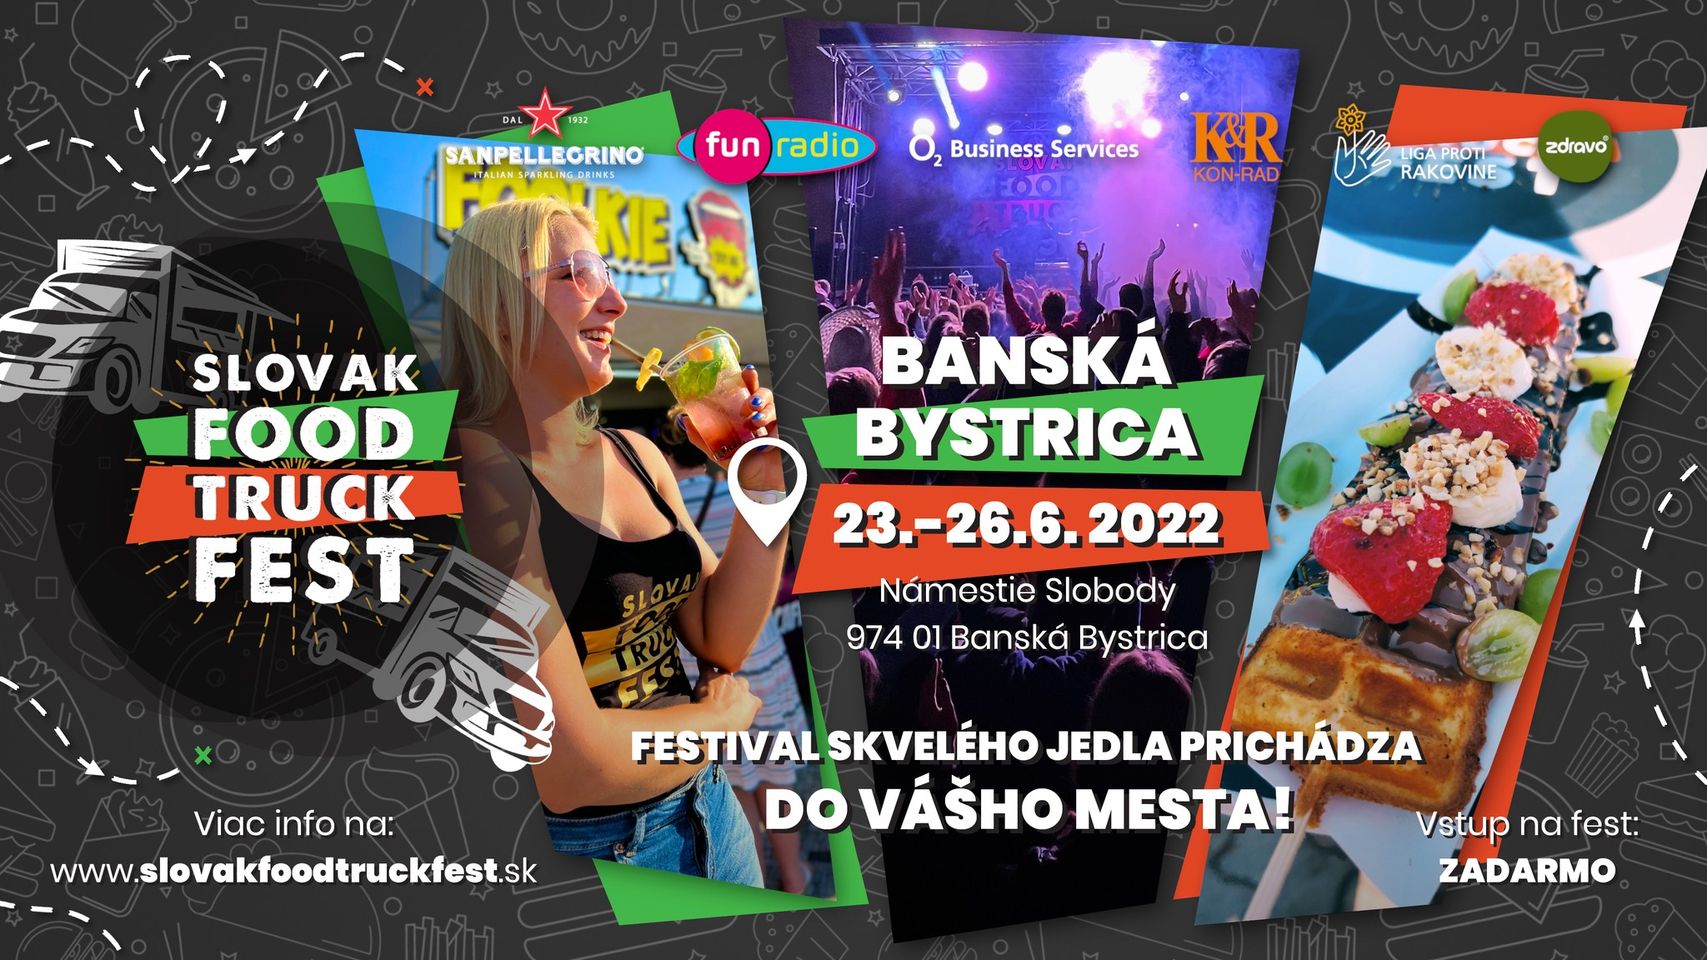 SlovakFoodTruckFest │ Banská Bystrica │ 1